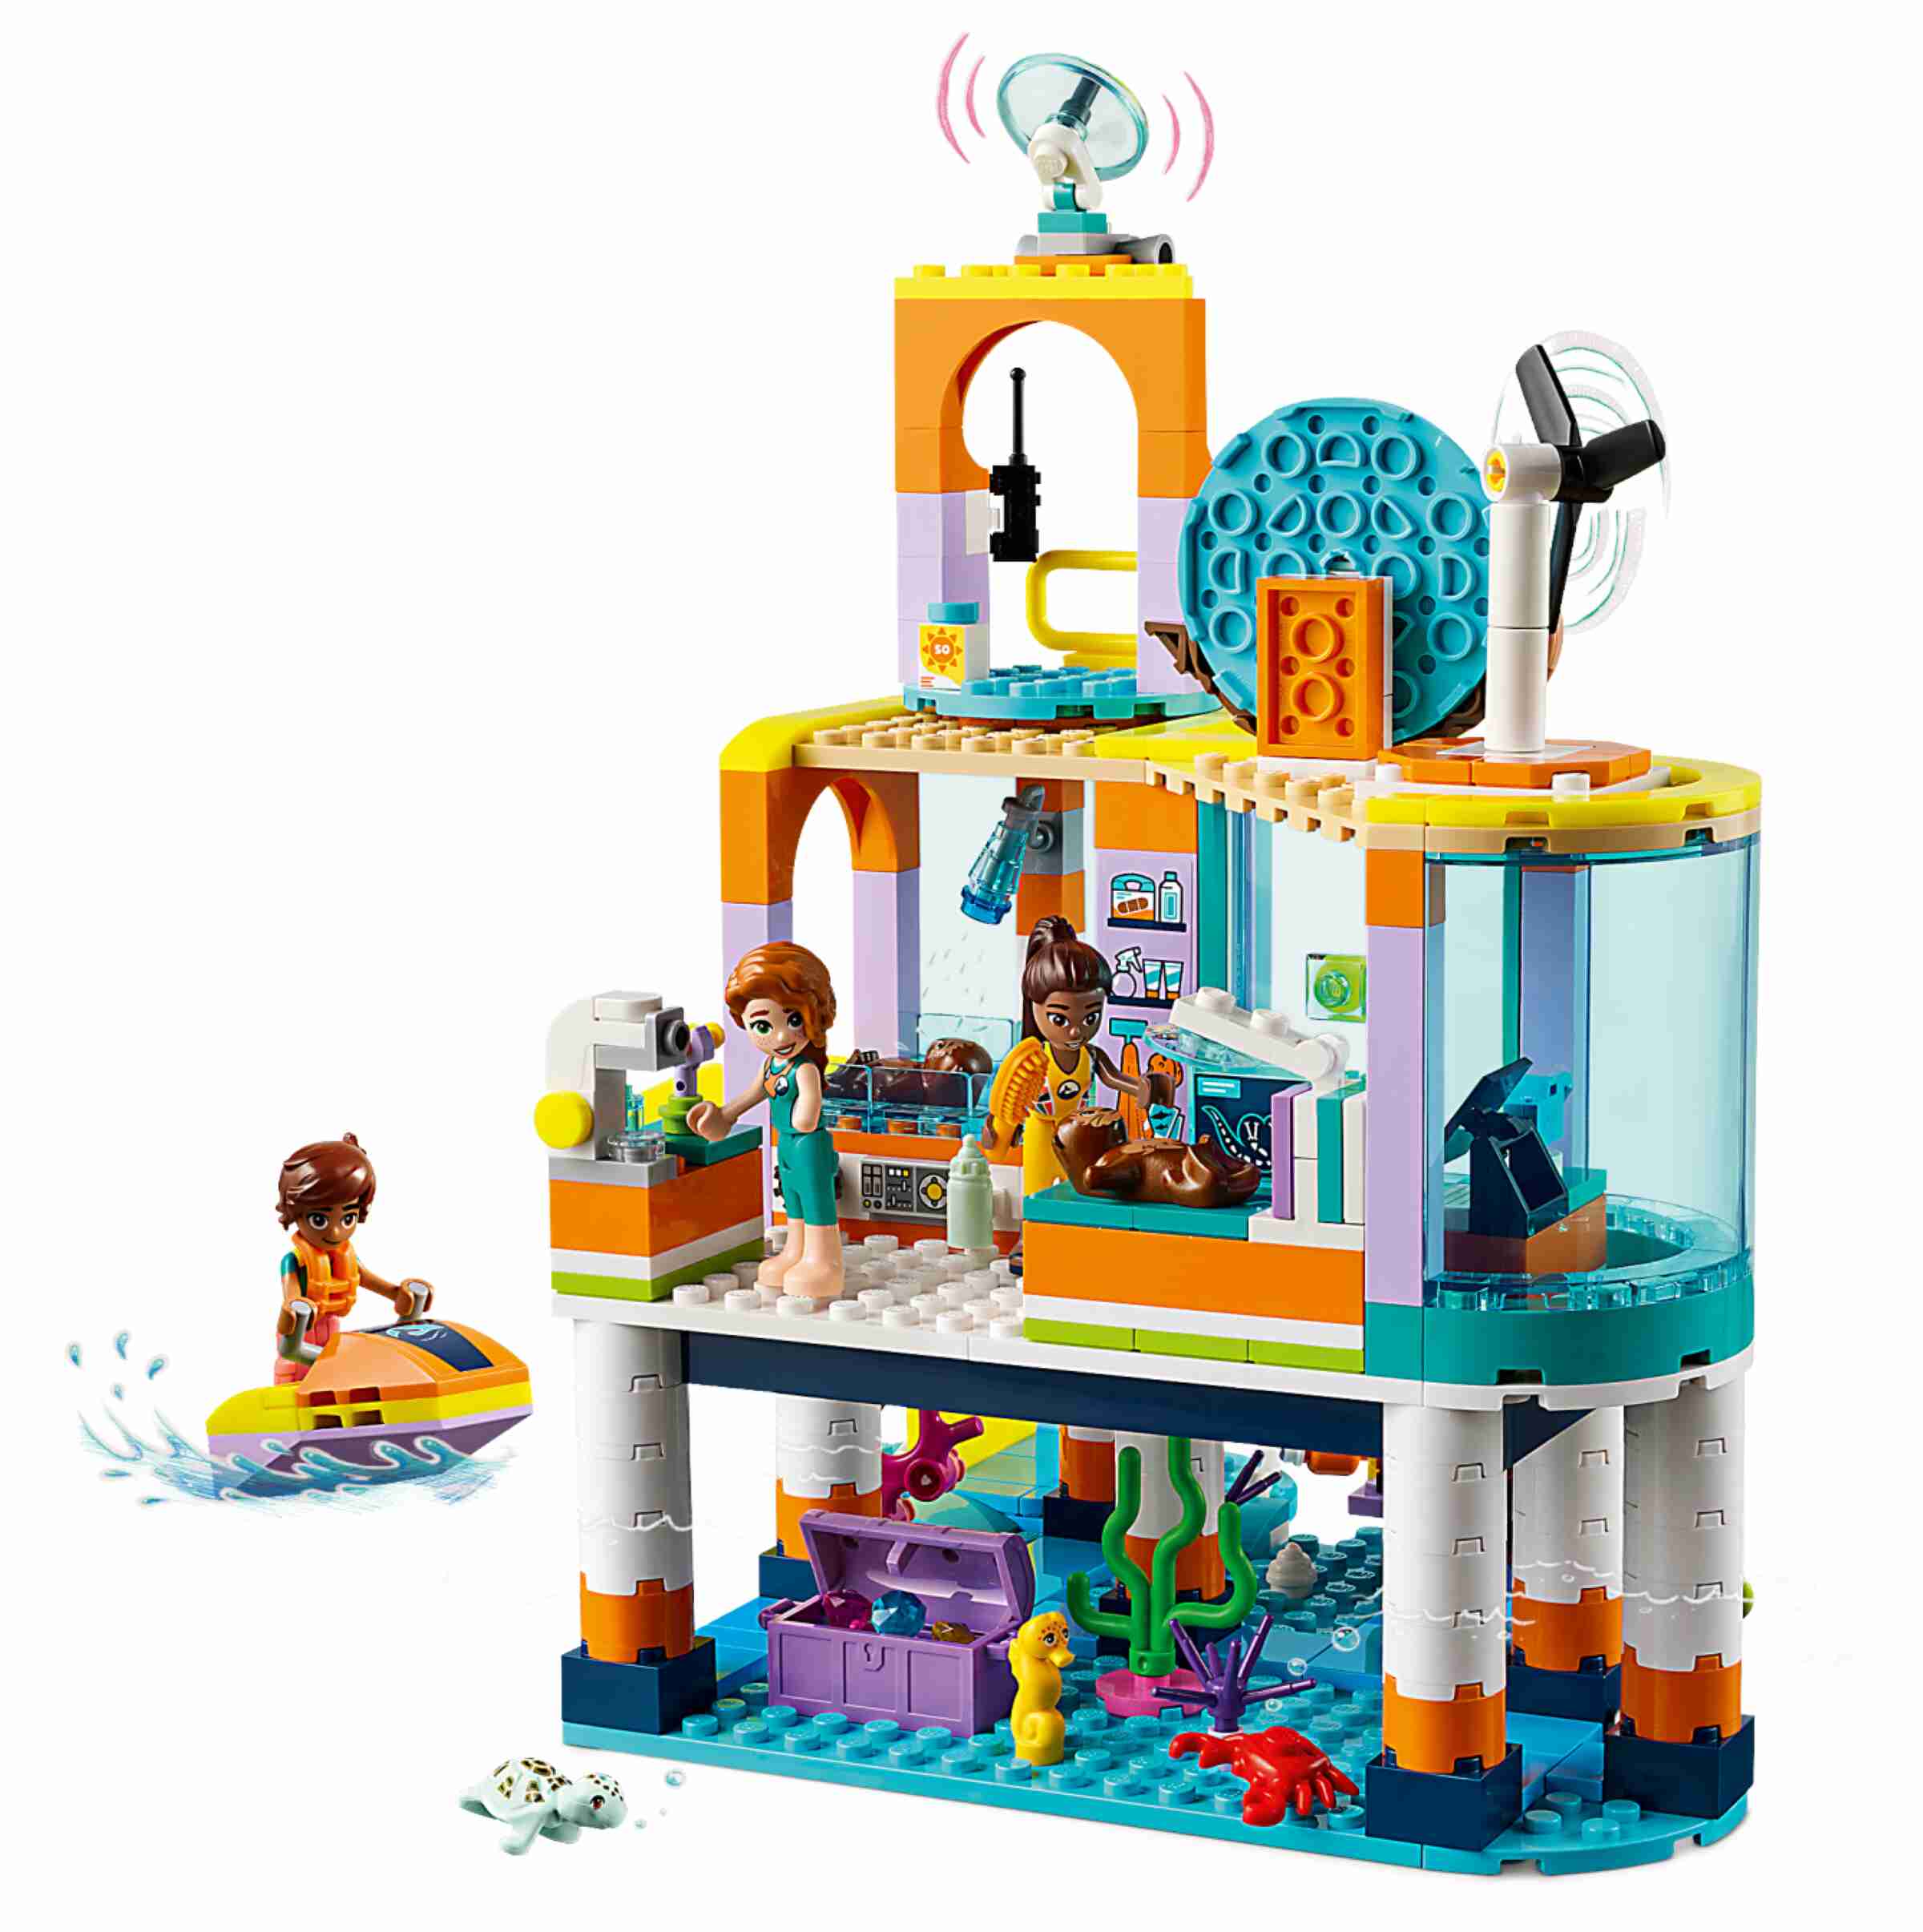 LEGO 41736 Friends Seerettungszentrum, 3 Spielfiguren, 4 Tiere, viel Zubehör